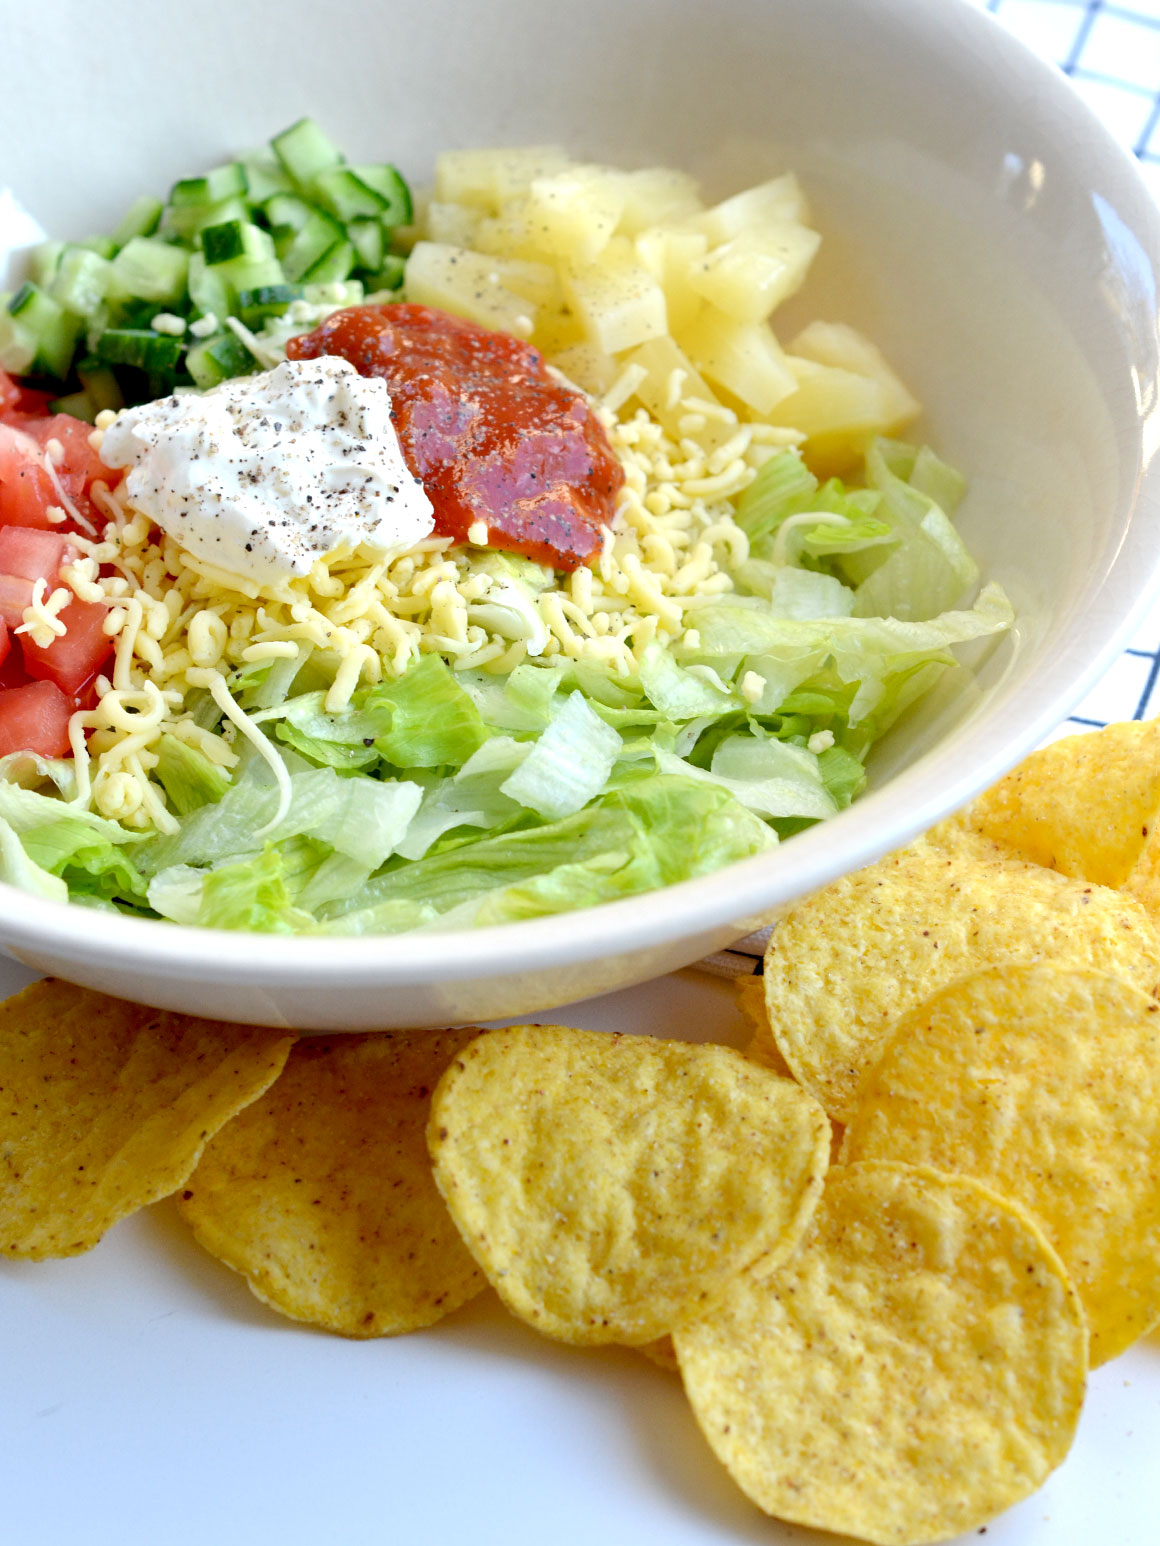 Makkelijke nacho salade